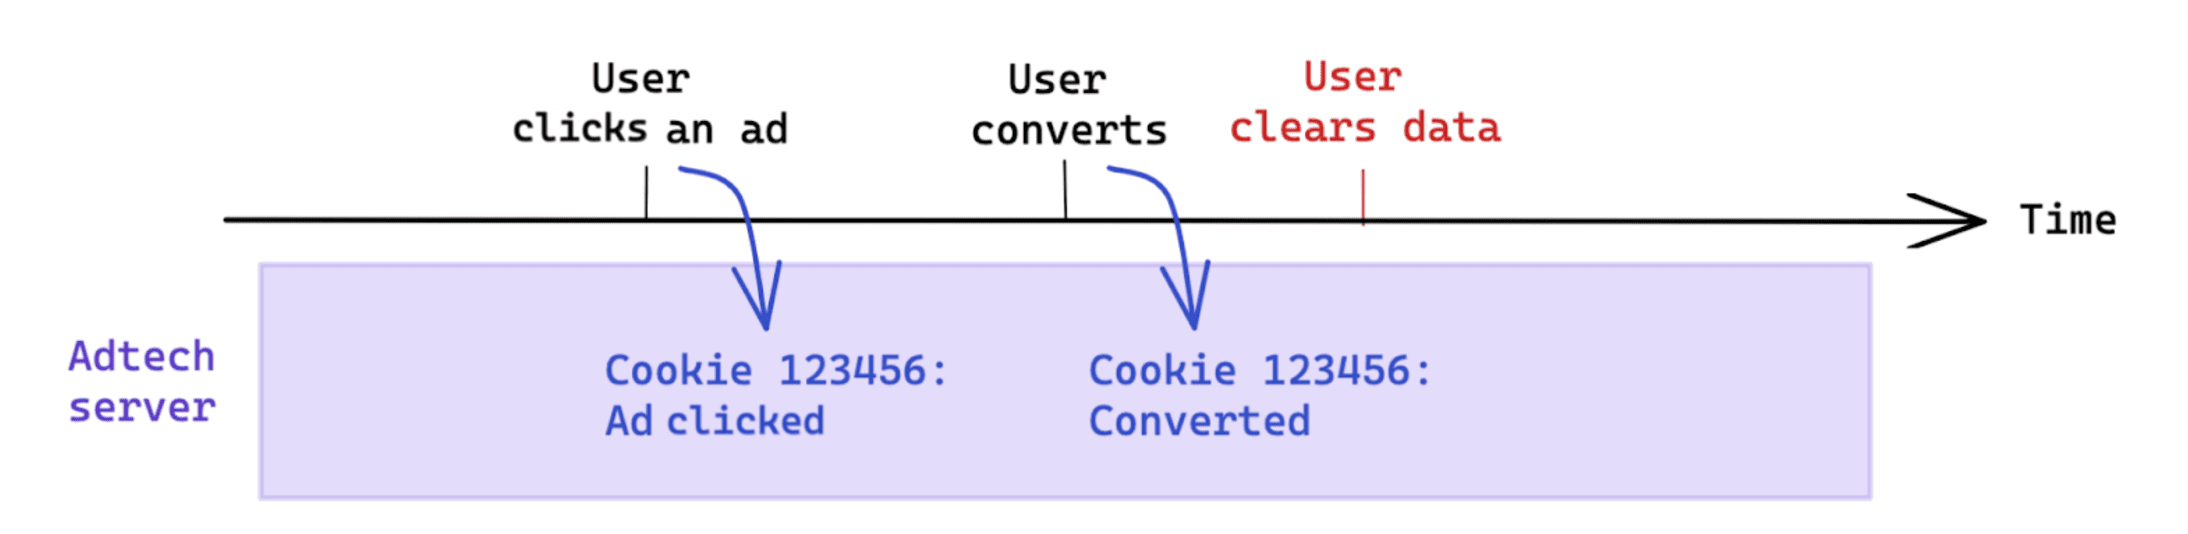 Czyszczenie danych zainicjowanych przez użytkownika po konwersji nie ma wpływu na pomiar z użyciem plików cookie.